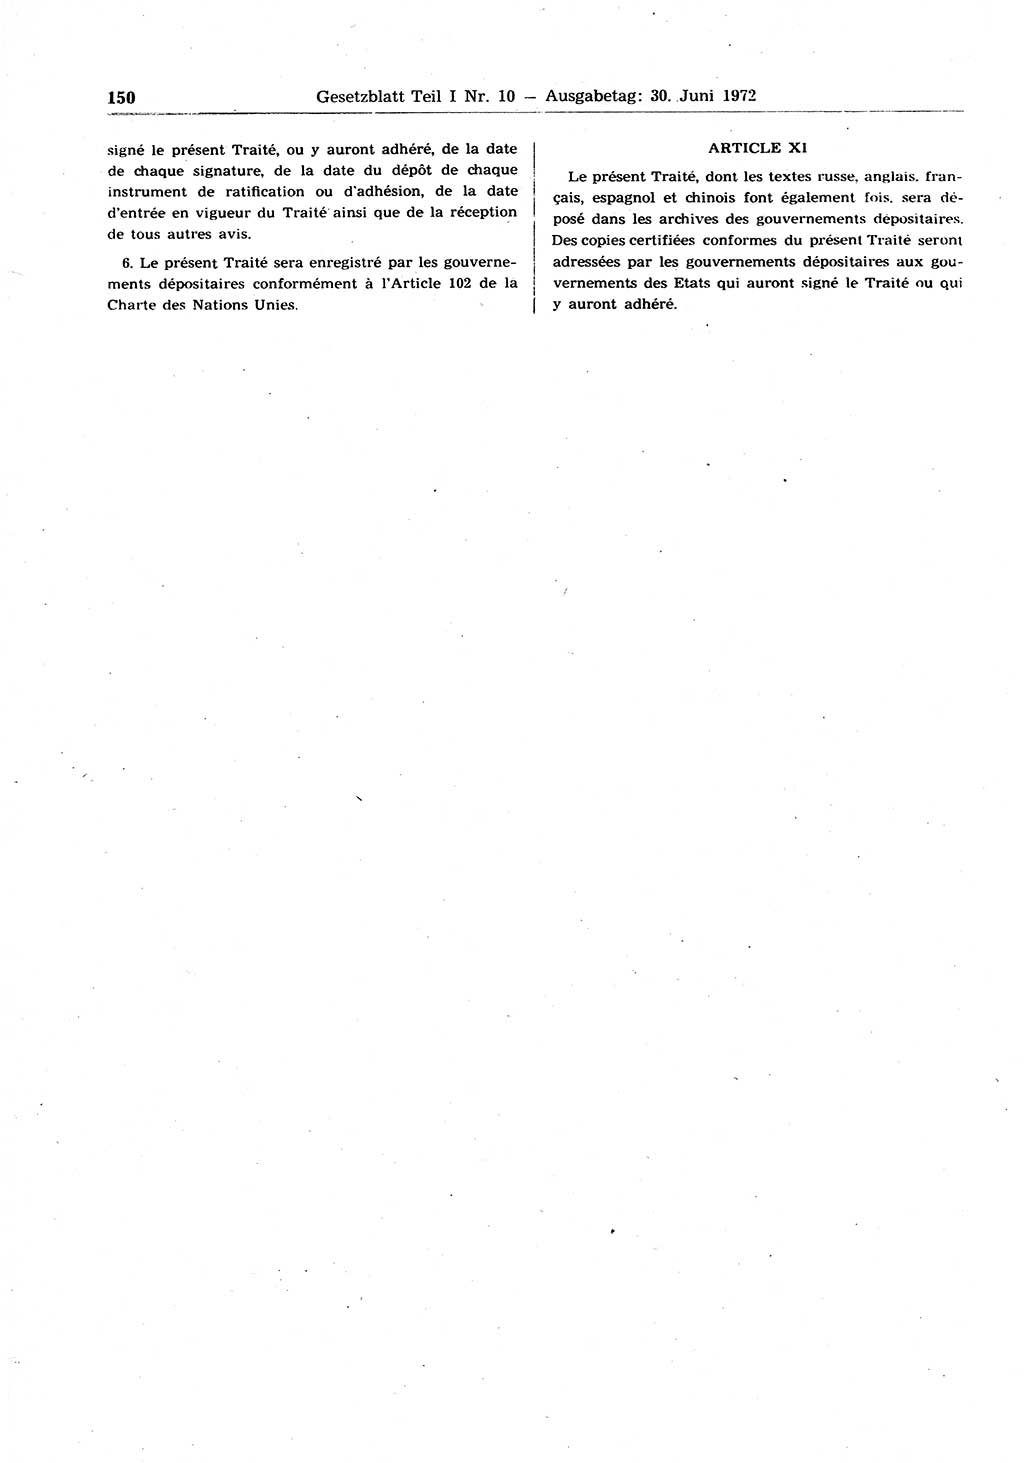 Gesetzblatt (GBl.) der Deutschen Demokratischen Republik (DDR) Teil Ⅰ 1972, Seite 150 (GBl. DDR Ⅰ 1972, S. 150)